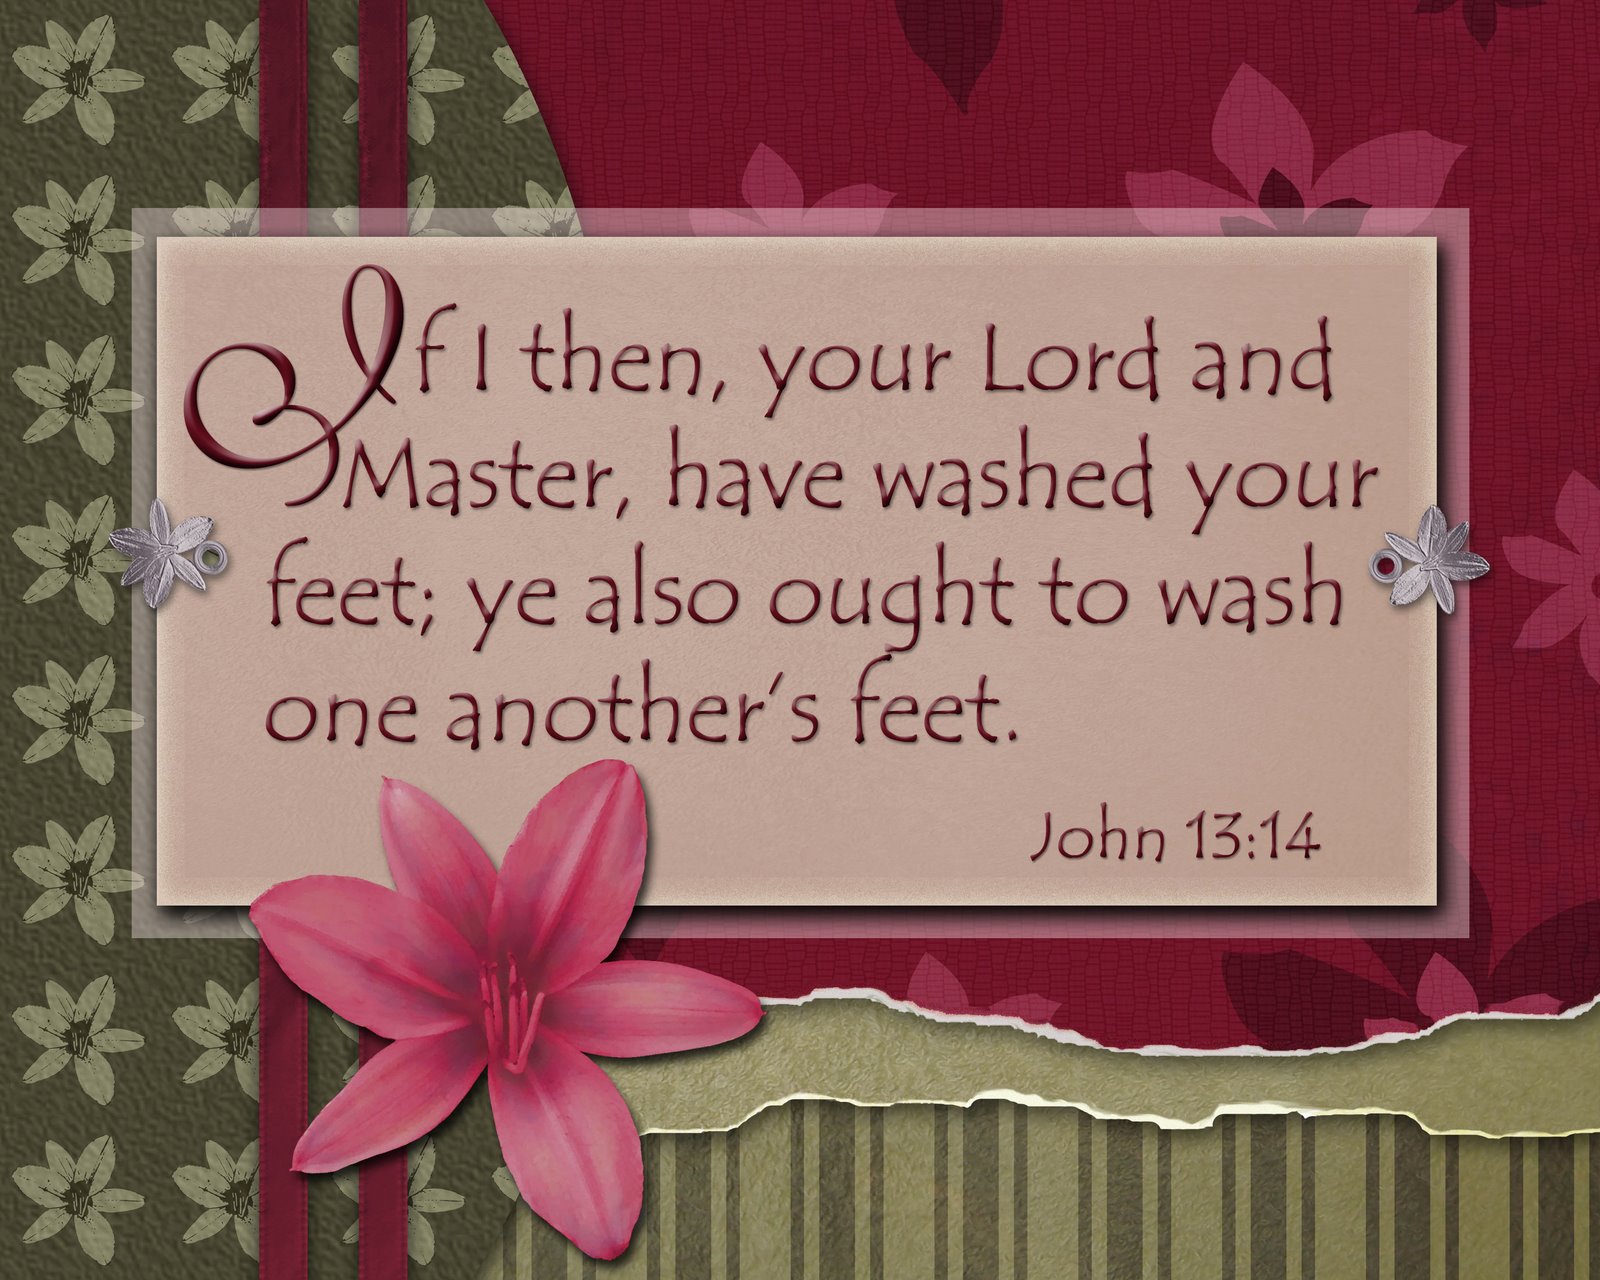 [Washing-Scripture-copyweb.jpg]